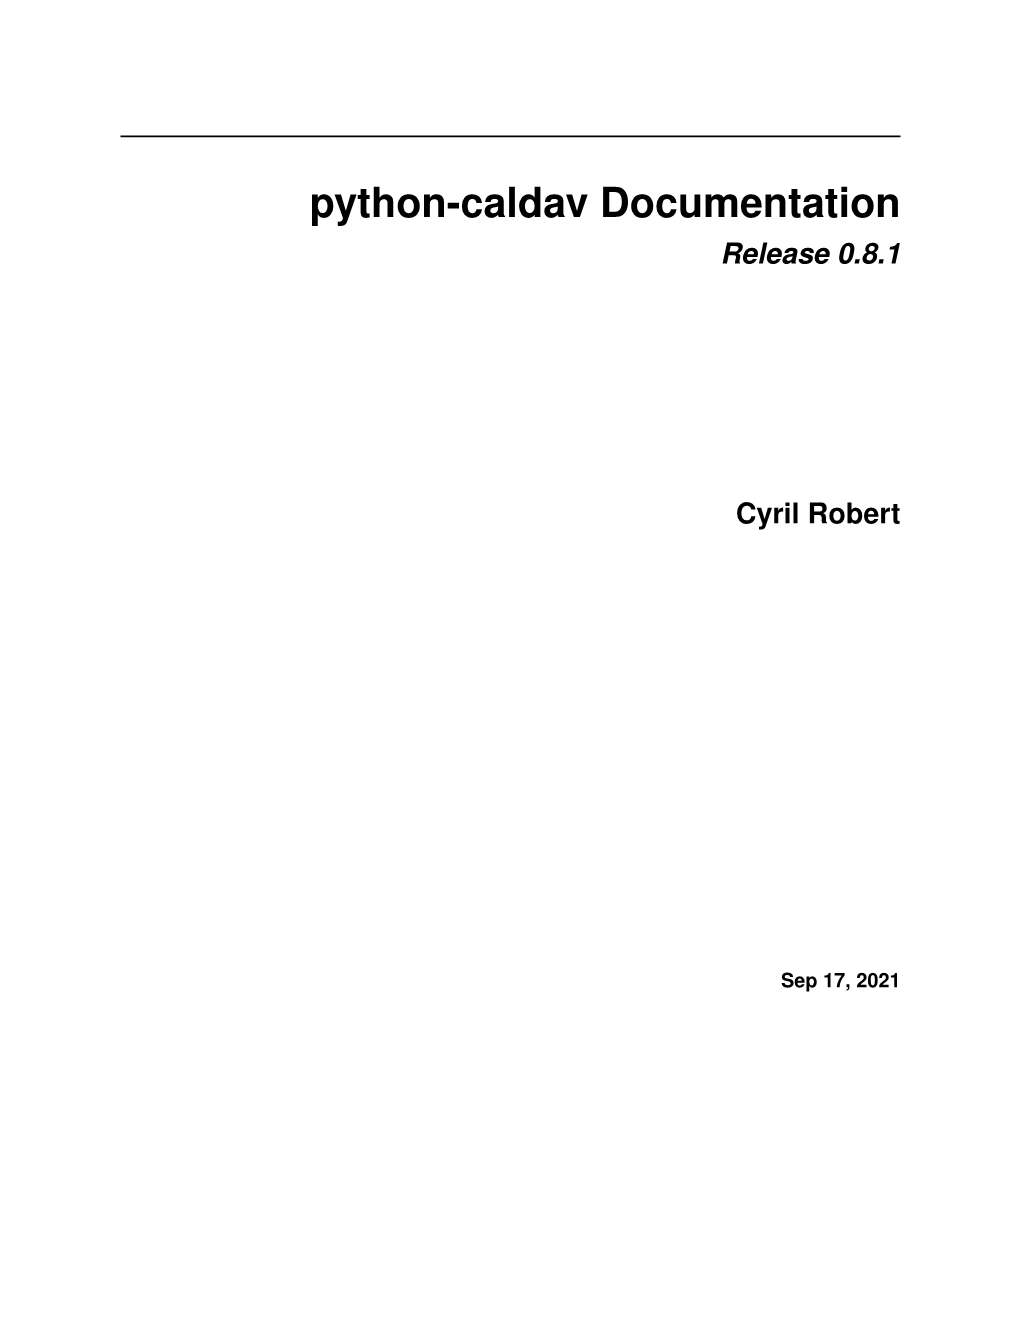 Python-Caldav Documentation Release 0.8.1